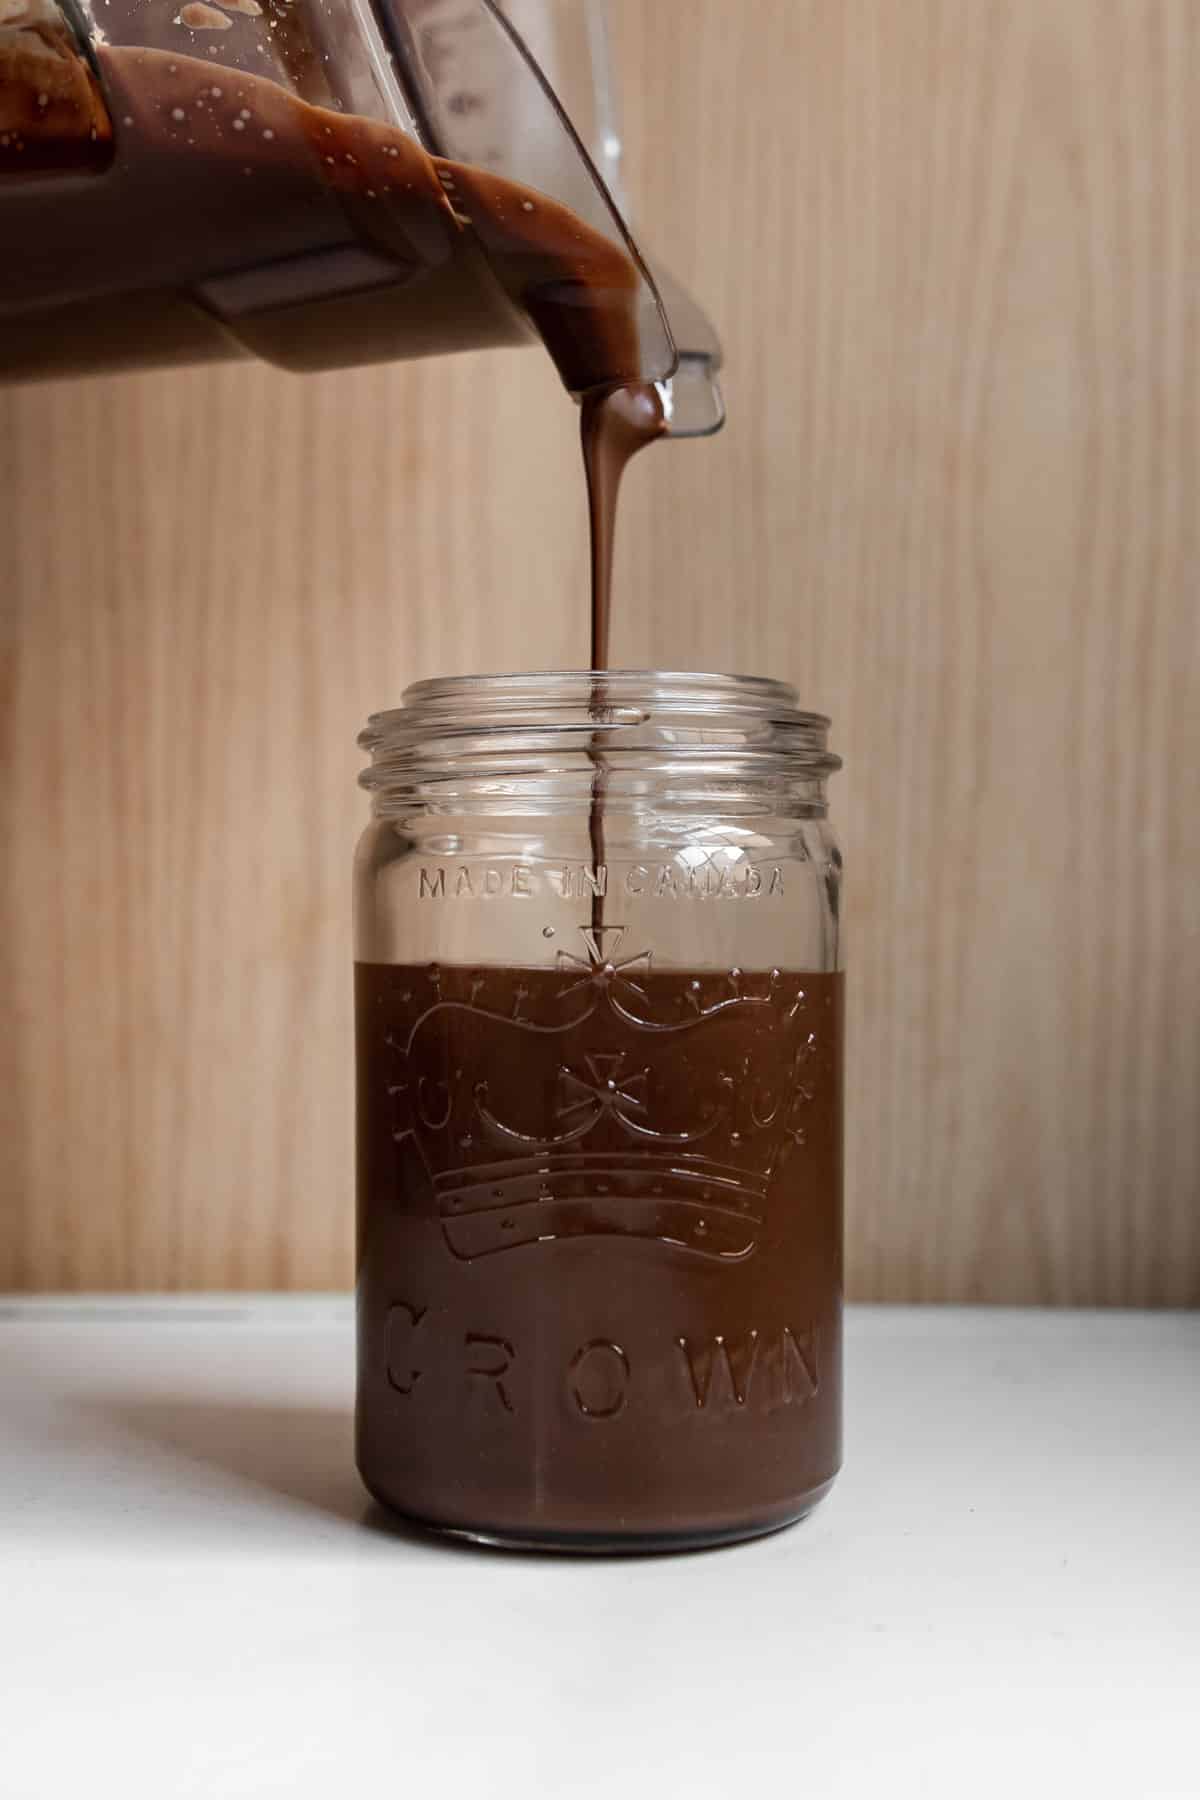 chocolate hazelnut spread being poured into a mason jar.